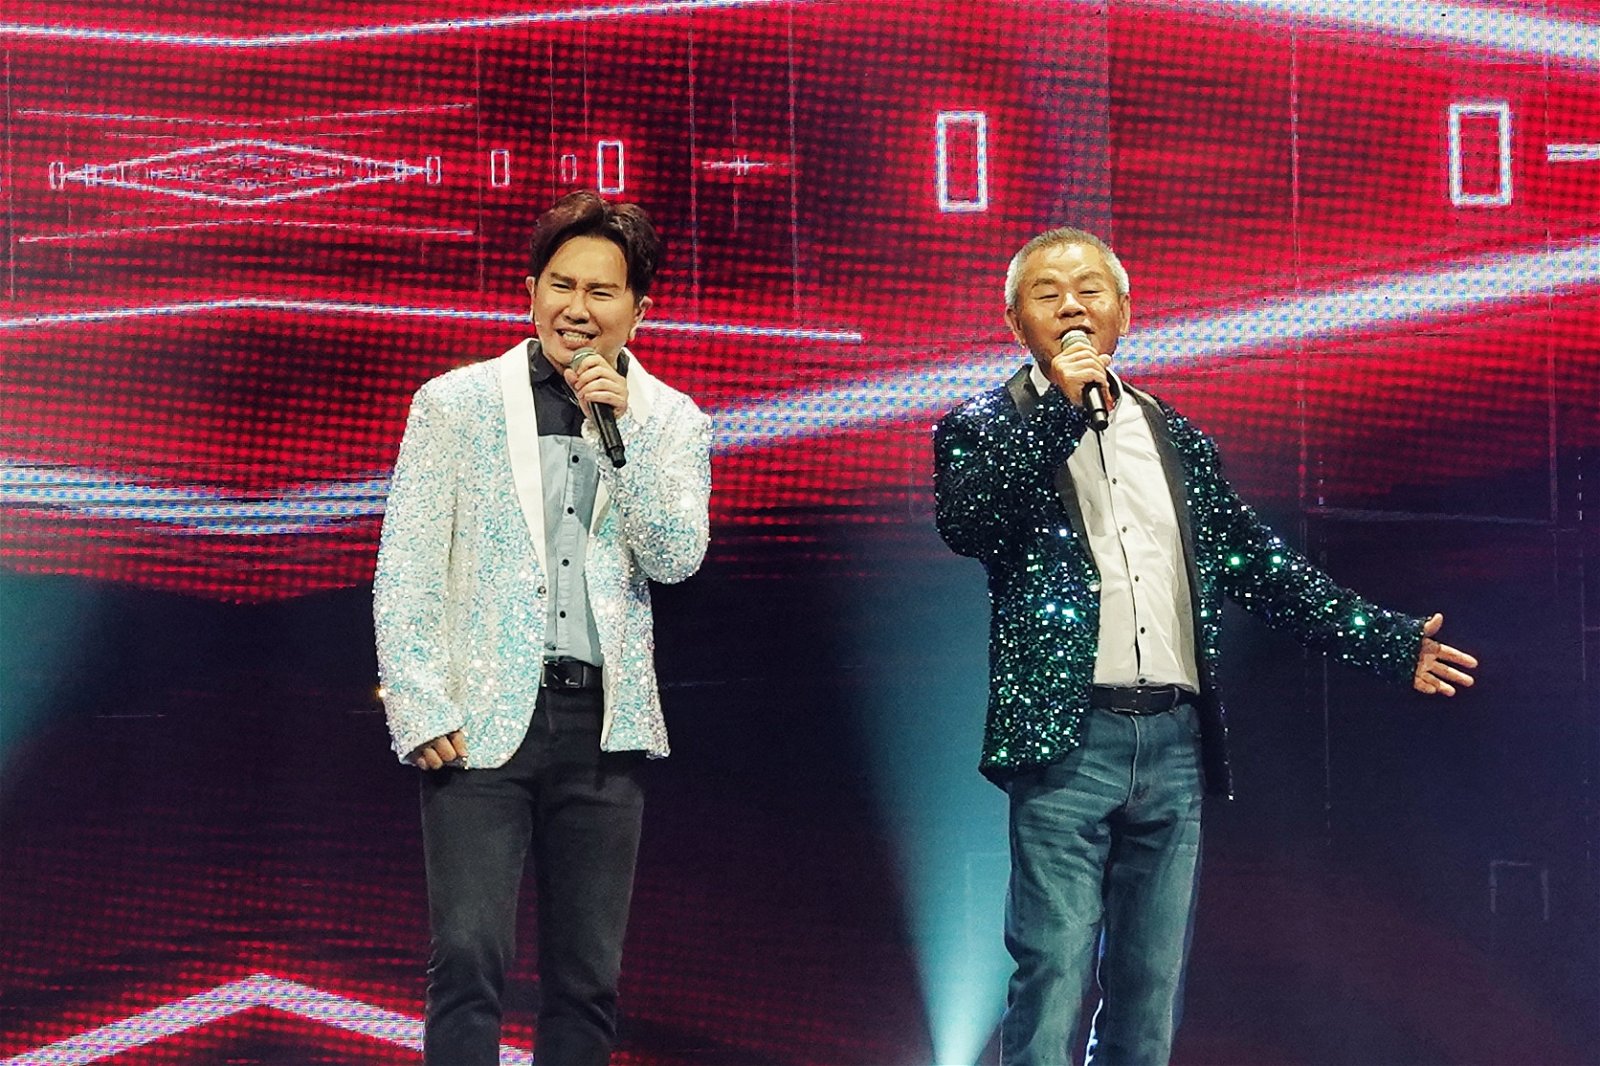 叶俊岑这次在《好声Family》邀来爸爸叶振浓（72岁）一起同台飙歌。